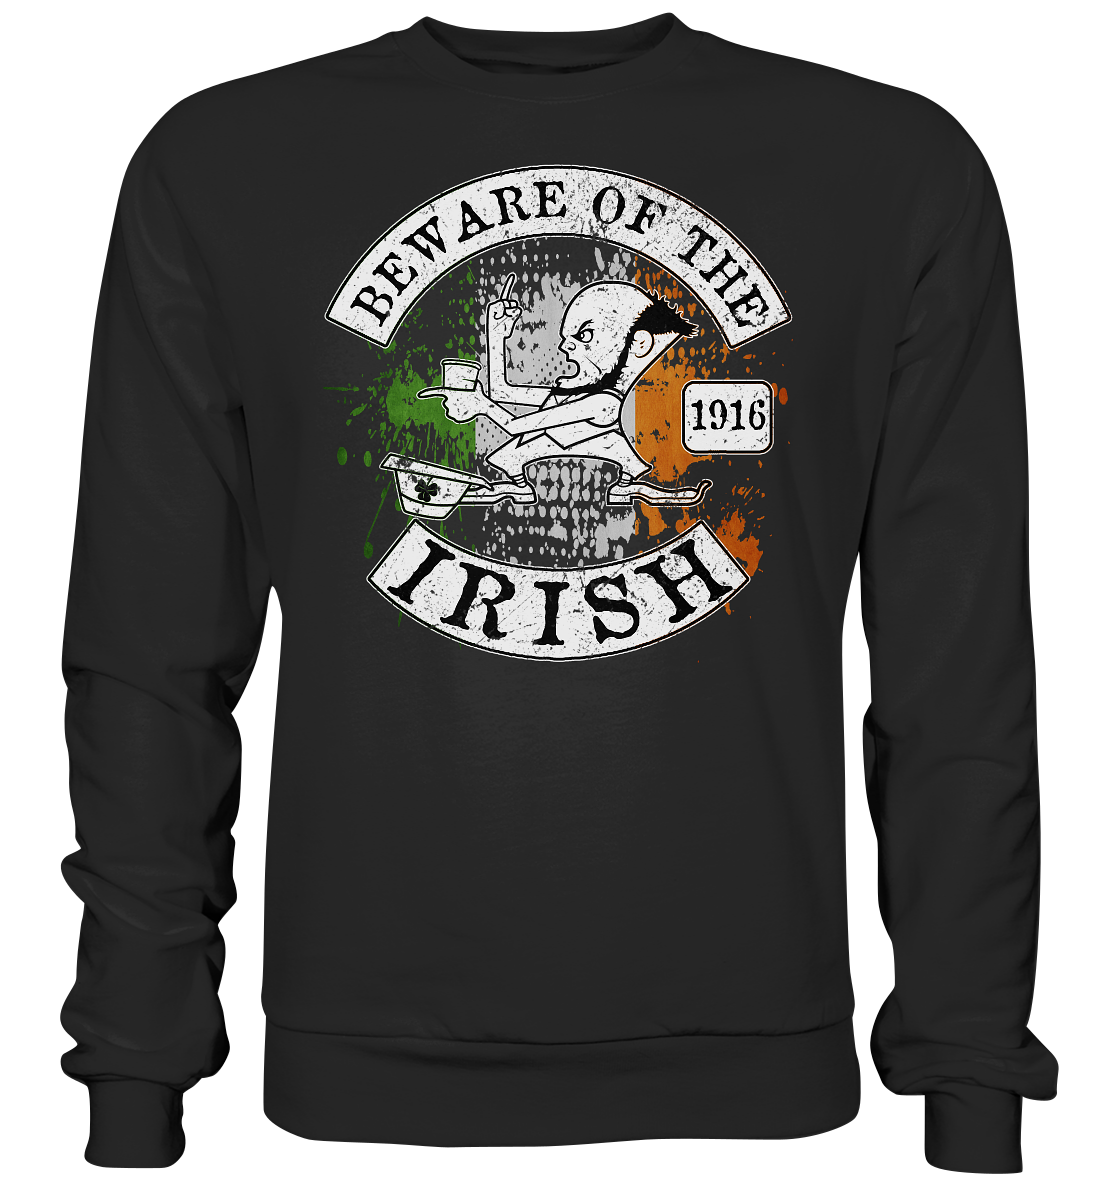 Beware Of The Irish - Premium Sweatshirt